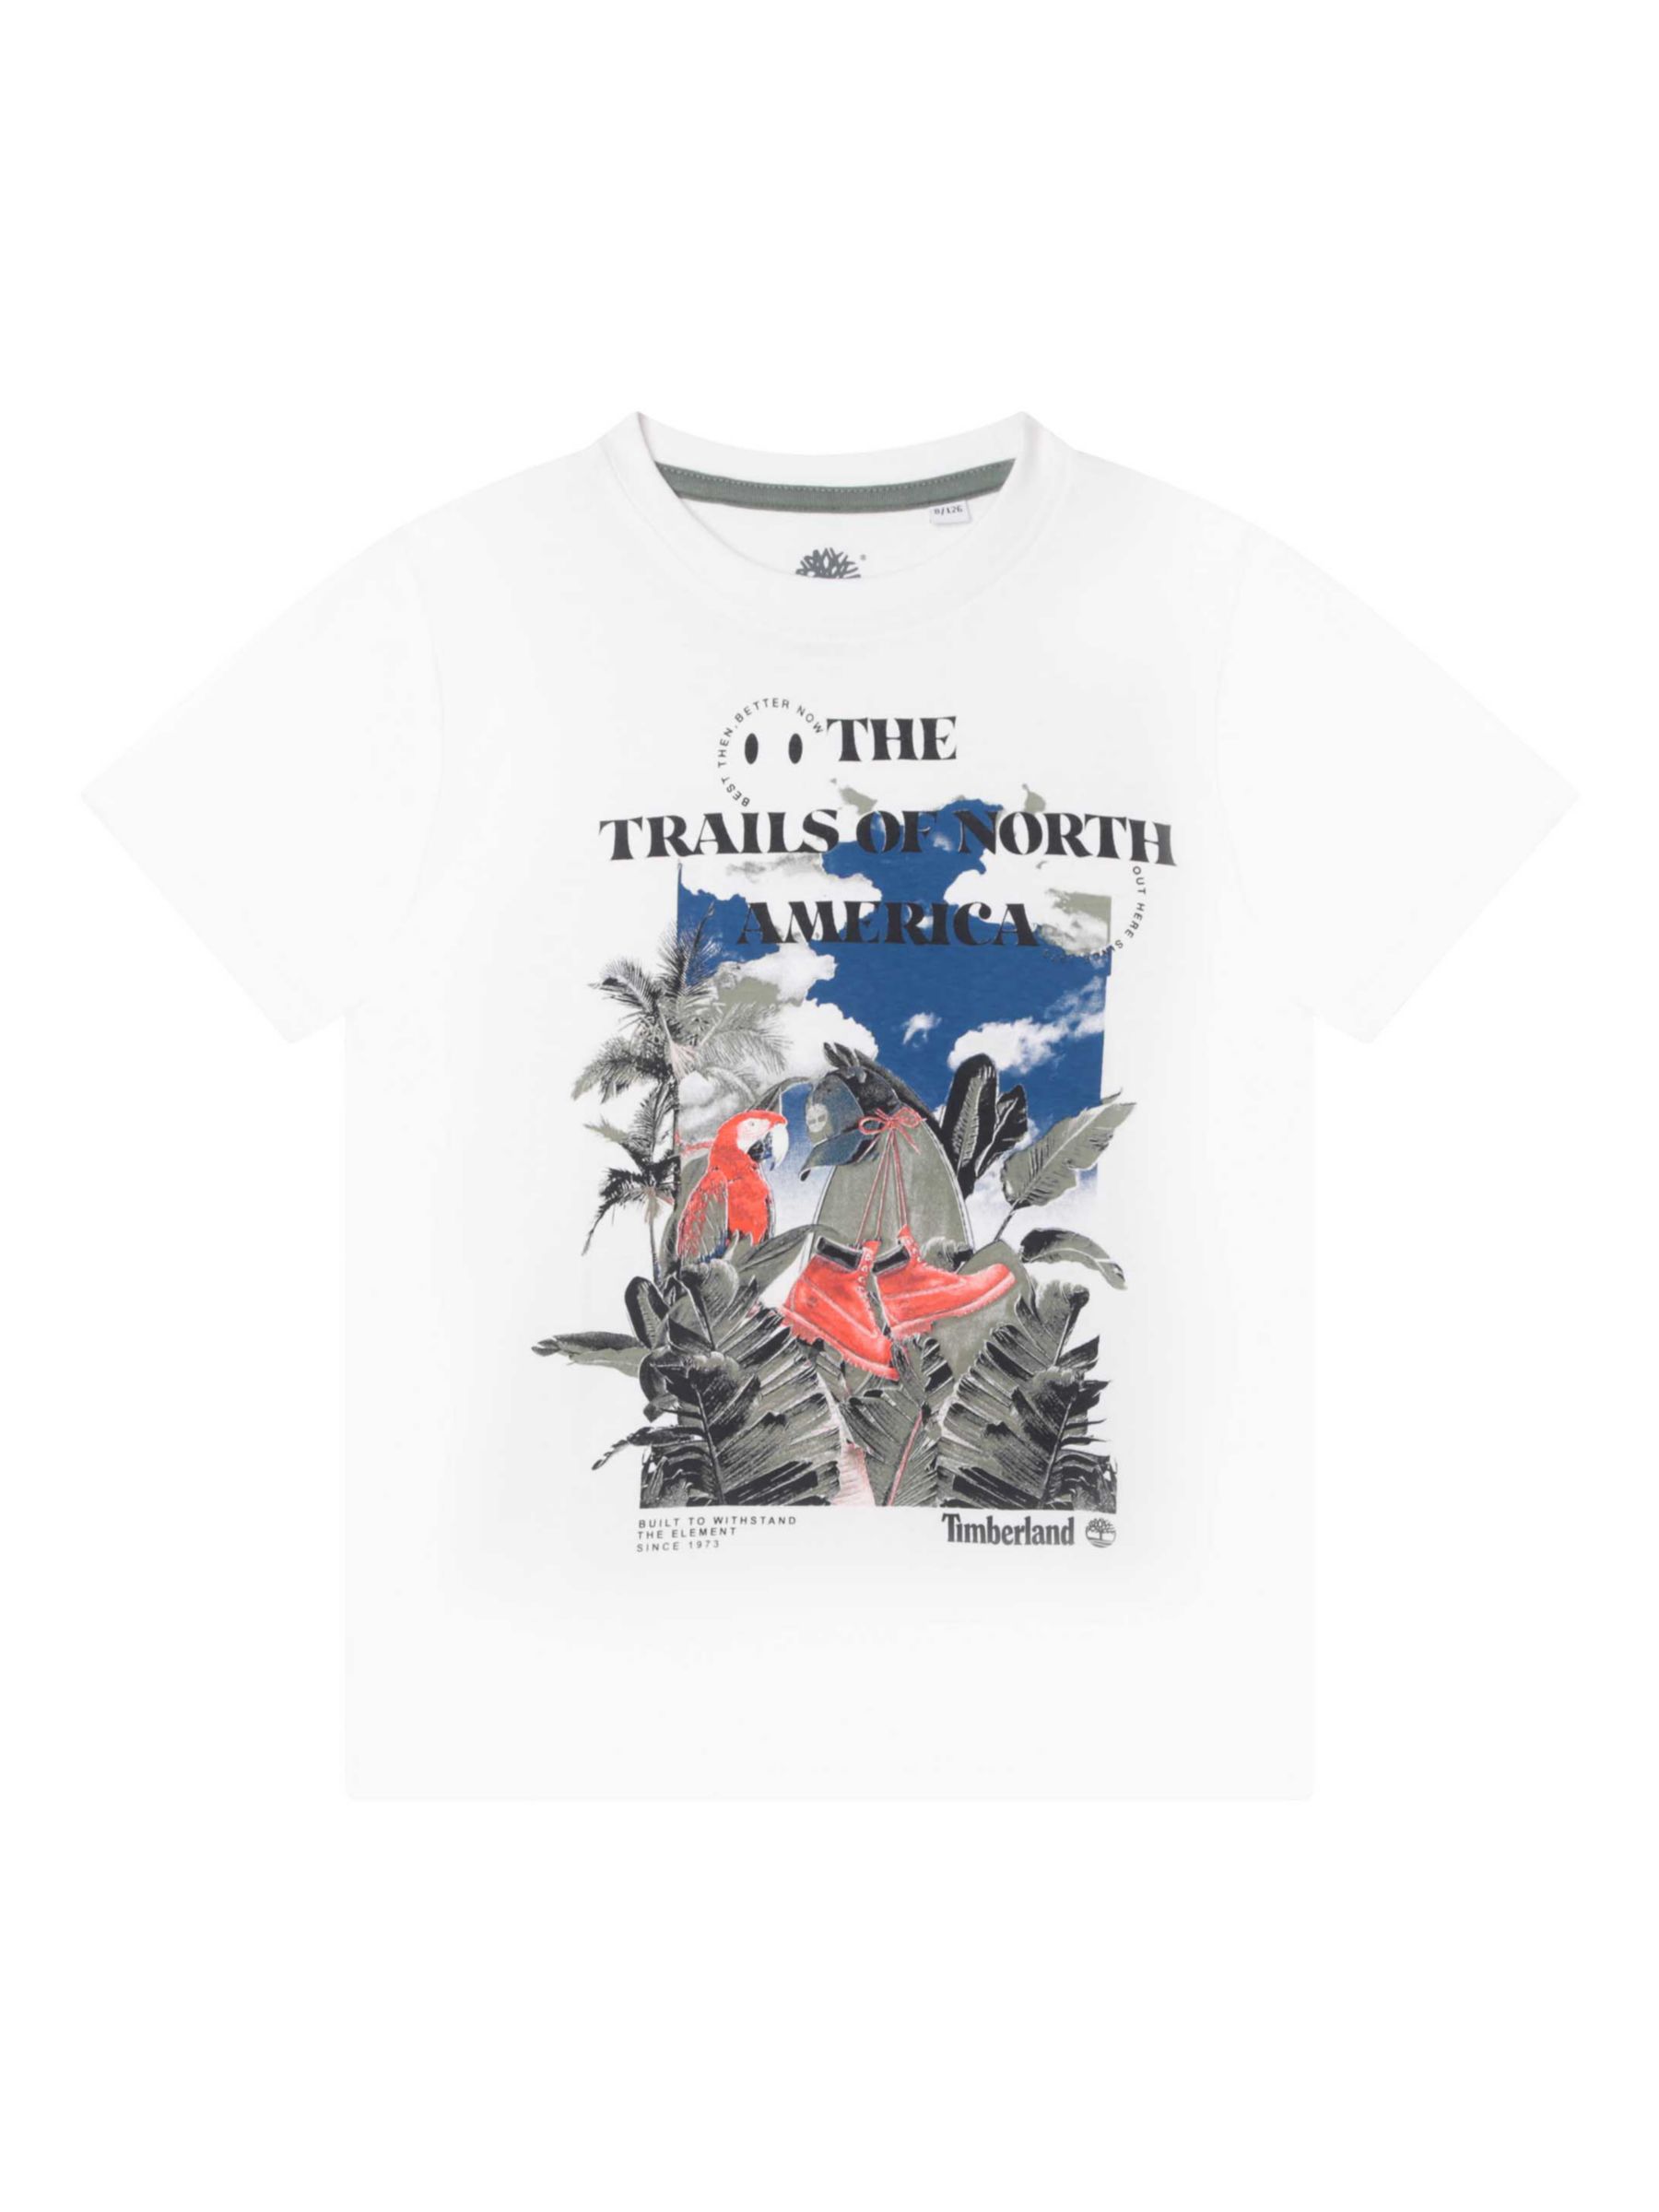 Детская футболка Следы Северной Америки Timberland, белый мужская футболка в стиле северной америки